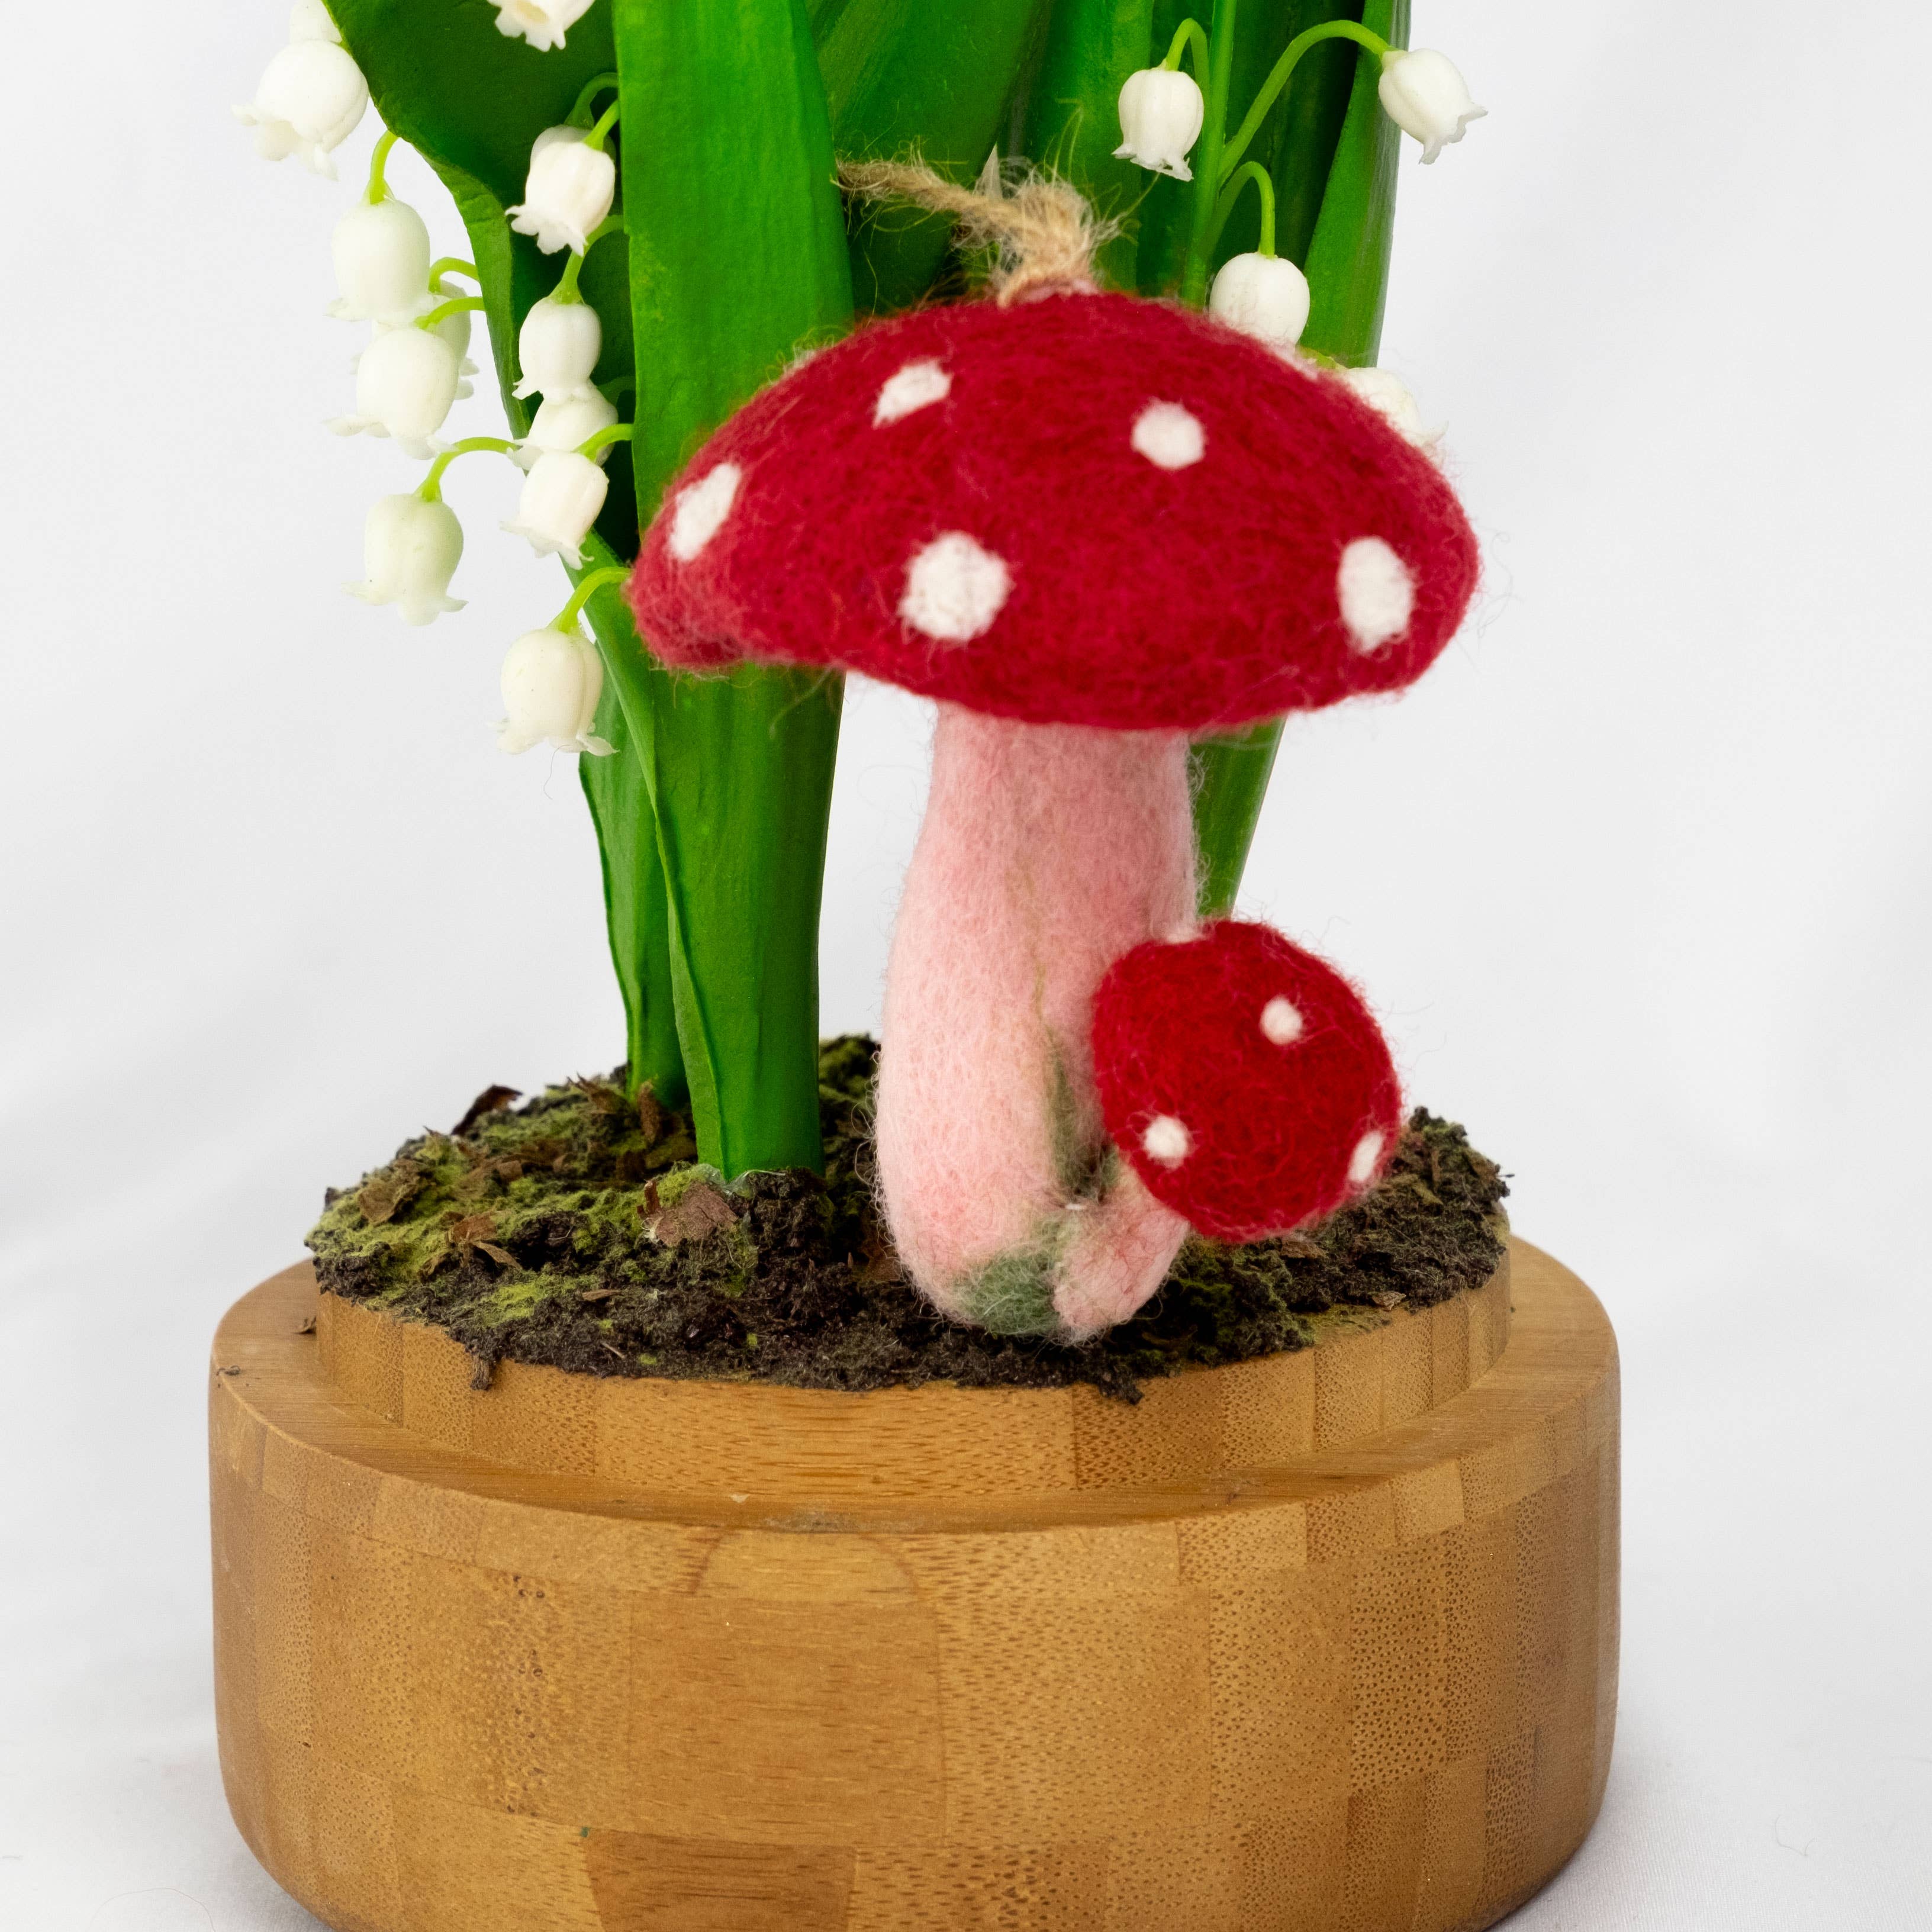 Felt Spotted Mushroom Ornament